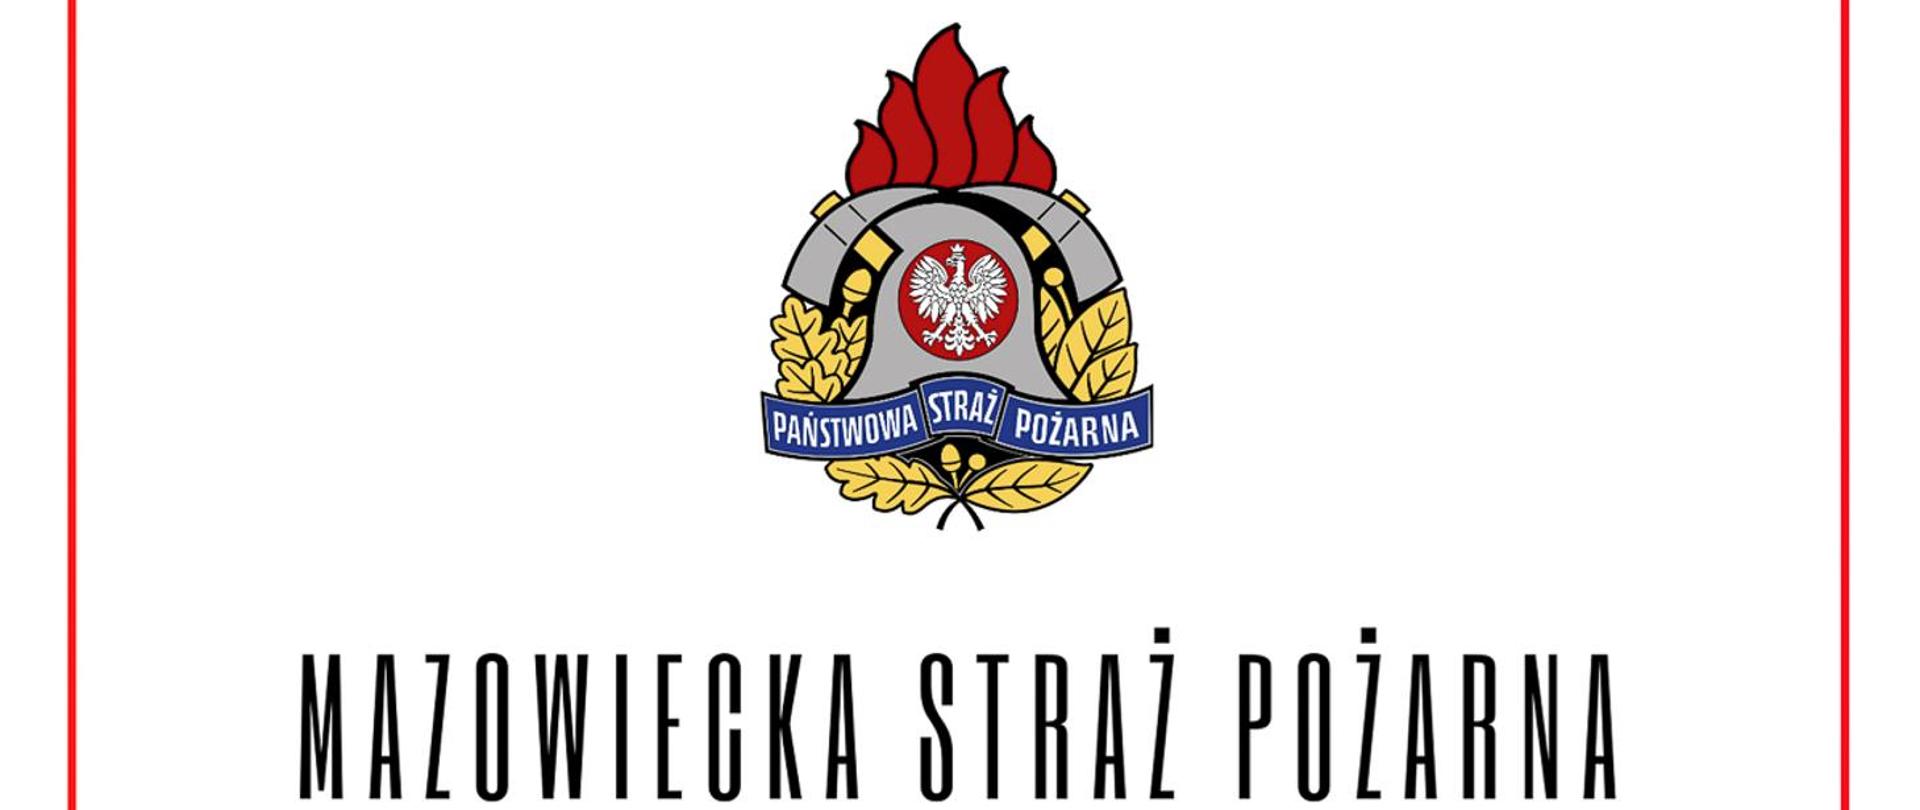 Życzenia wiceministra spraw wewnętrznych i administracji oraz mazowieckiego komendanta wojewódzkiego PSP z okazji Dnia Strażaka